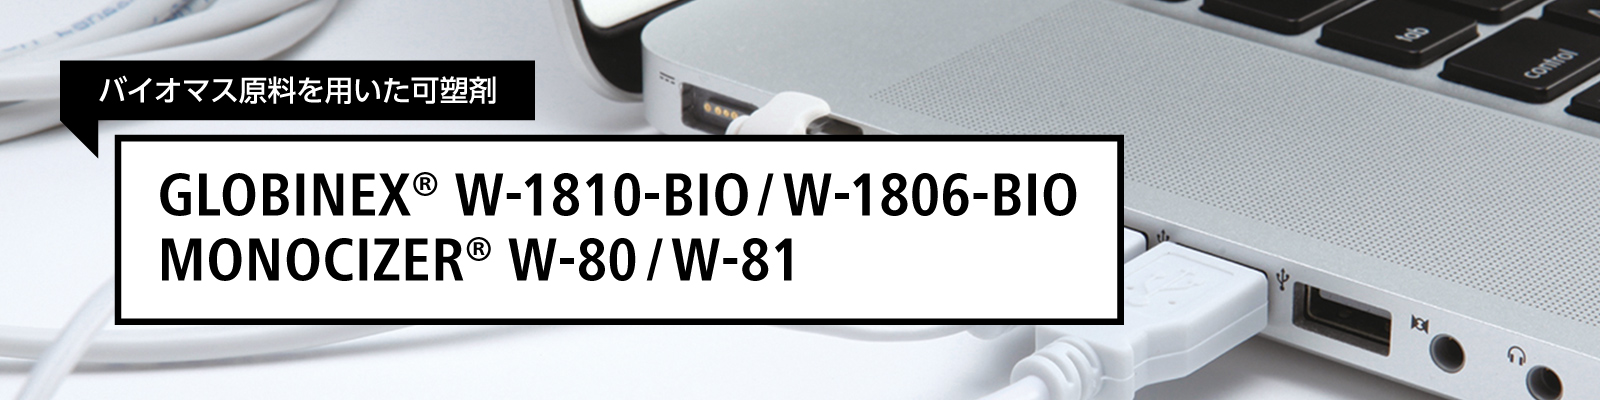 GLOBINEX® W-1810-BIO, W-1806-BIO/MONOCIZER® W-80/W-81 A7440Bio